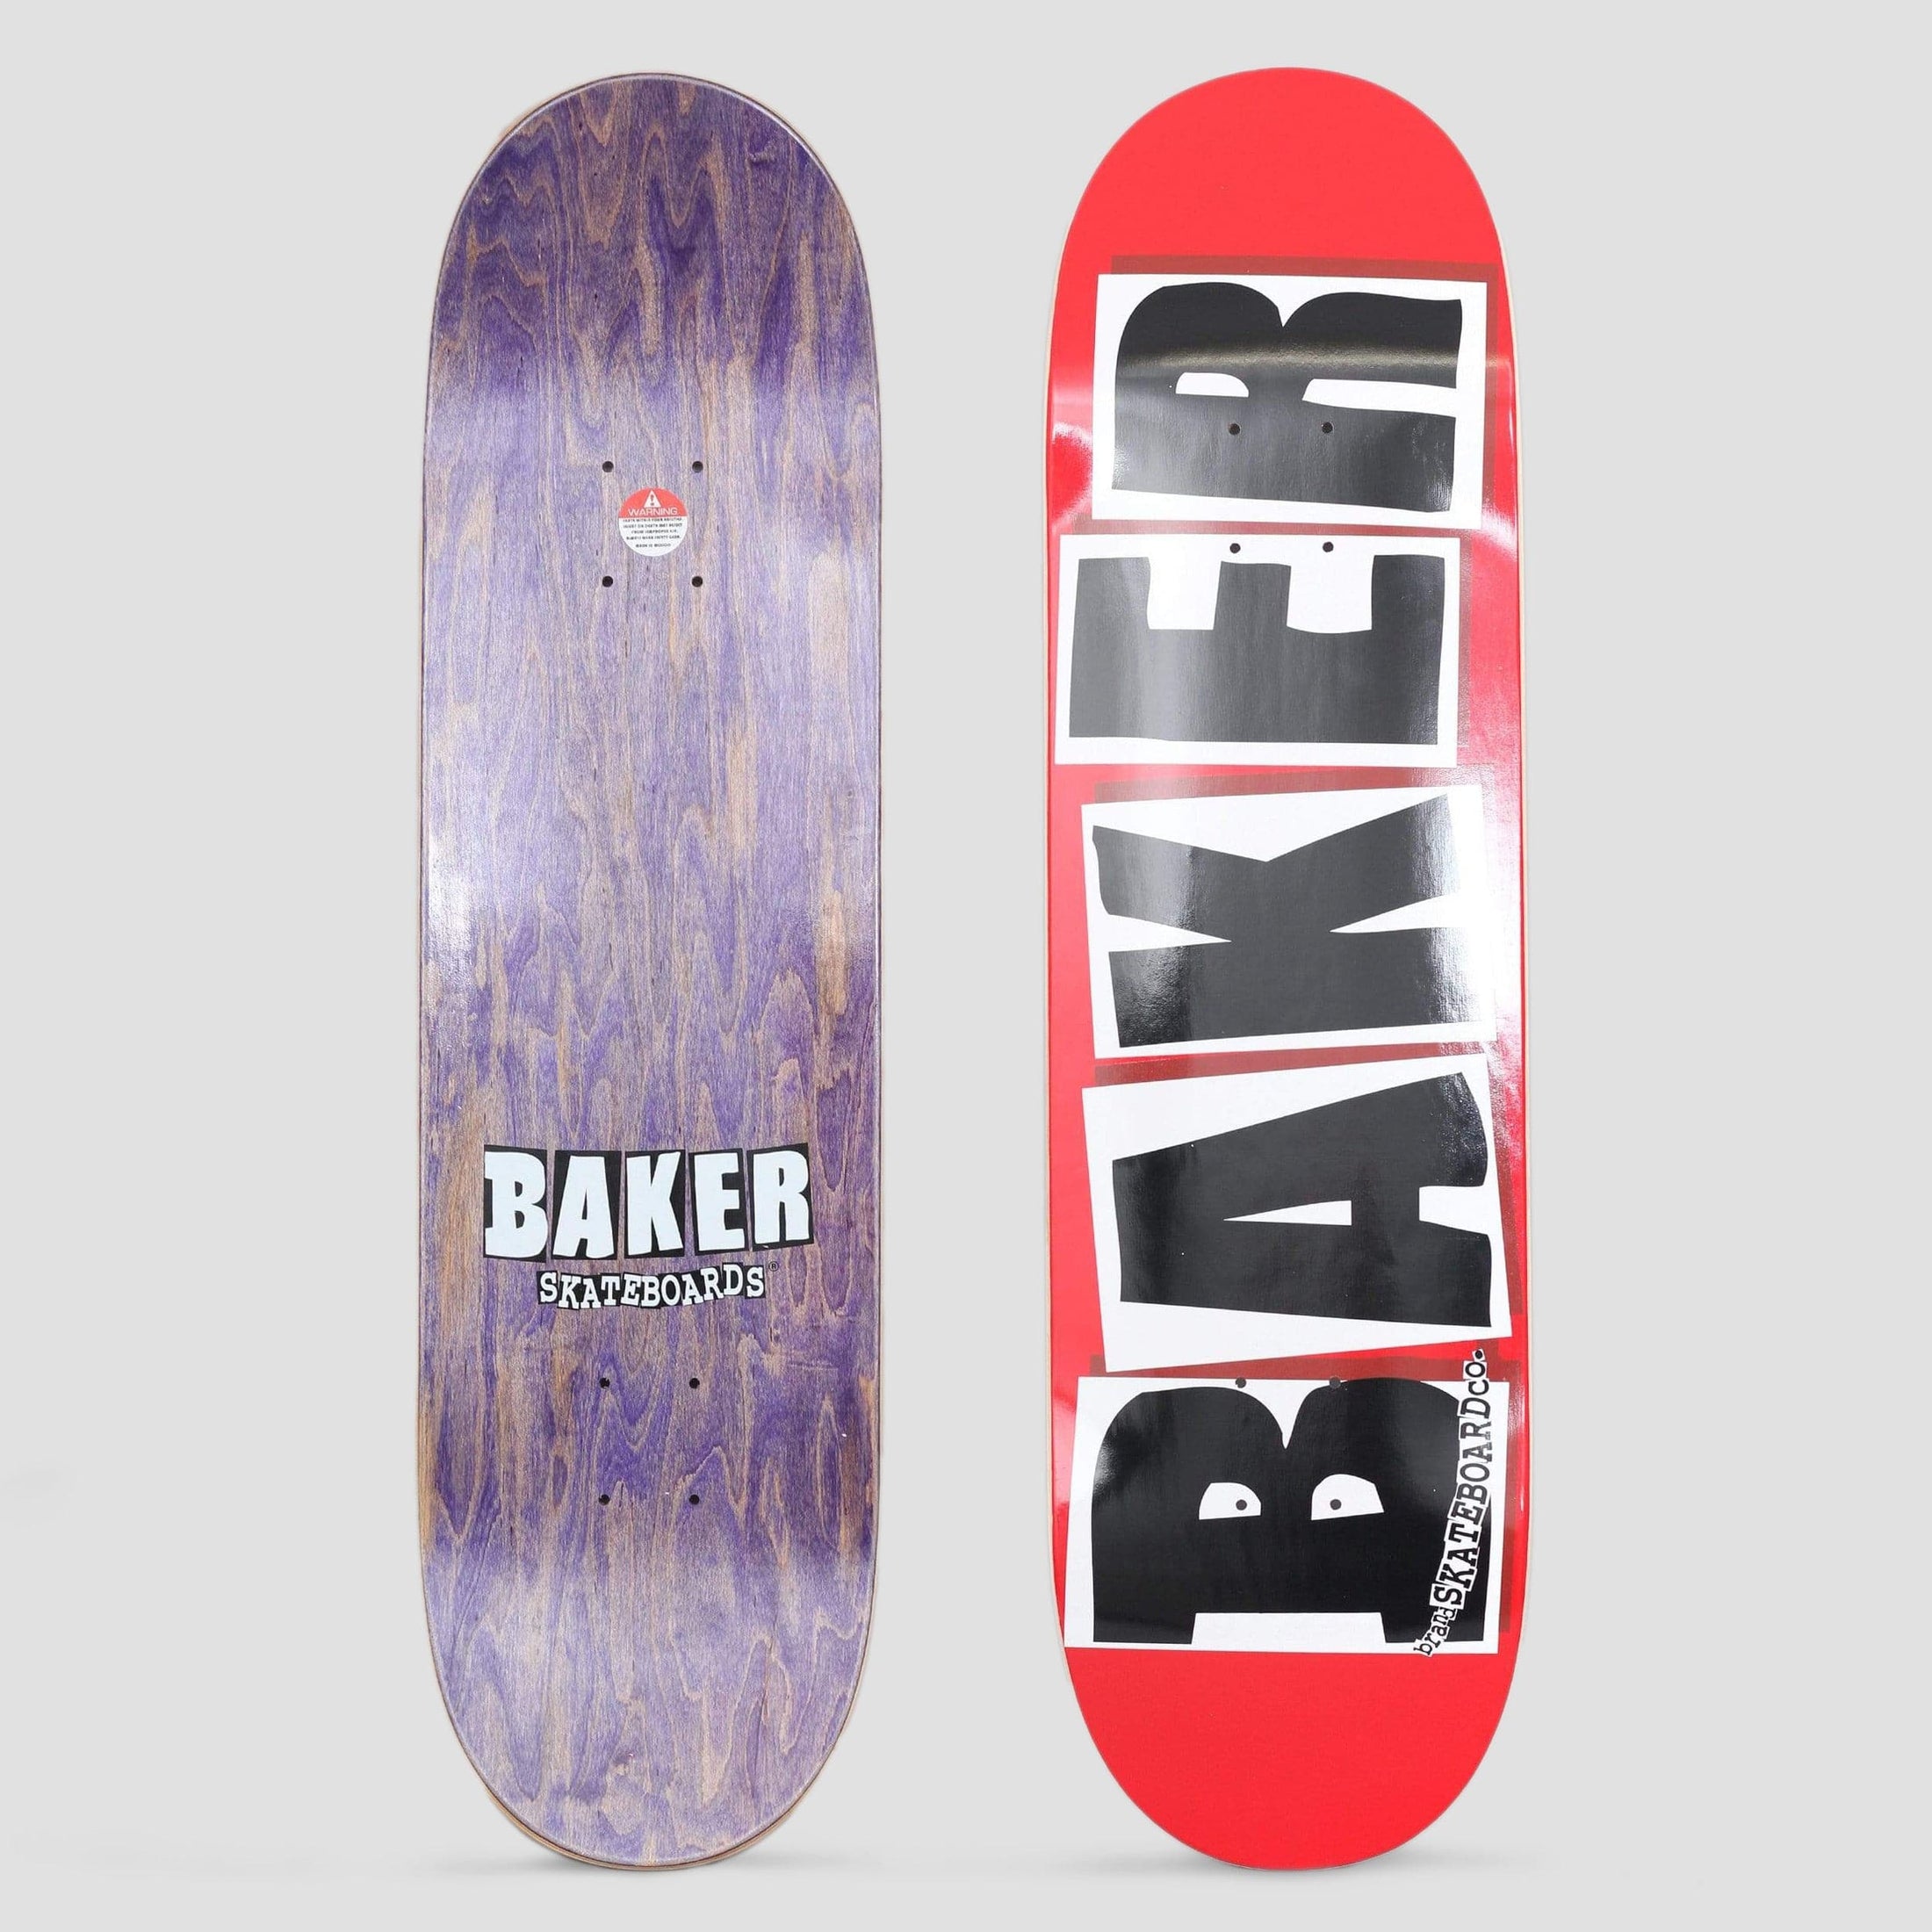 Baker 8.75 Brand Logo Skateboard Deck Red / Black